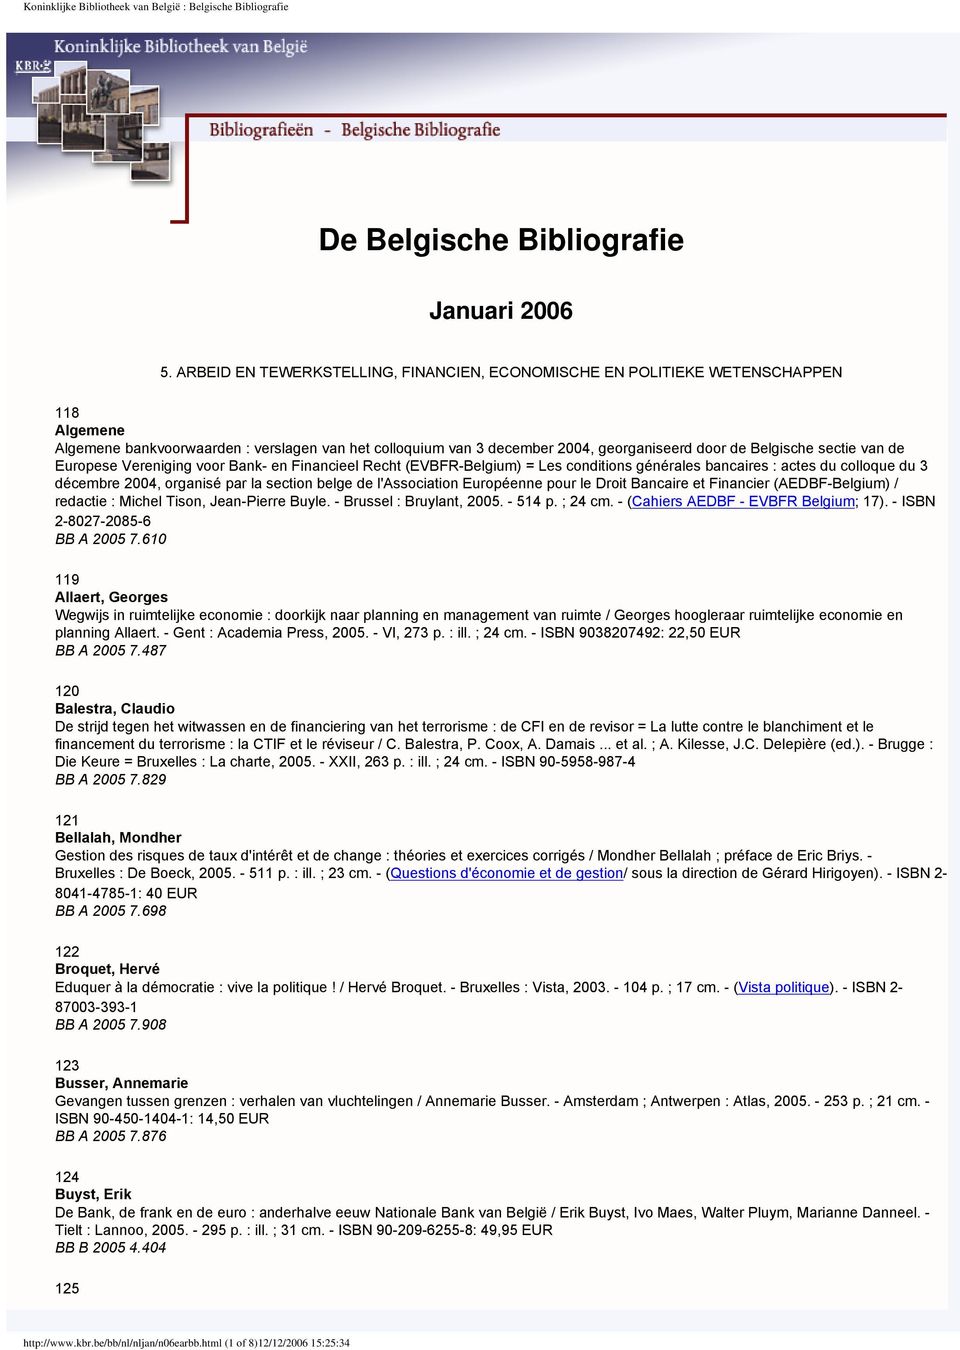 sectie van de Europese Vereniging voor Bank- en Financieel Recht (EVBFR-Belgium) = Les conditions générales bancaires : actes du colloque du 3 décembre 2004, organisé par la section belge de